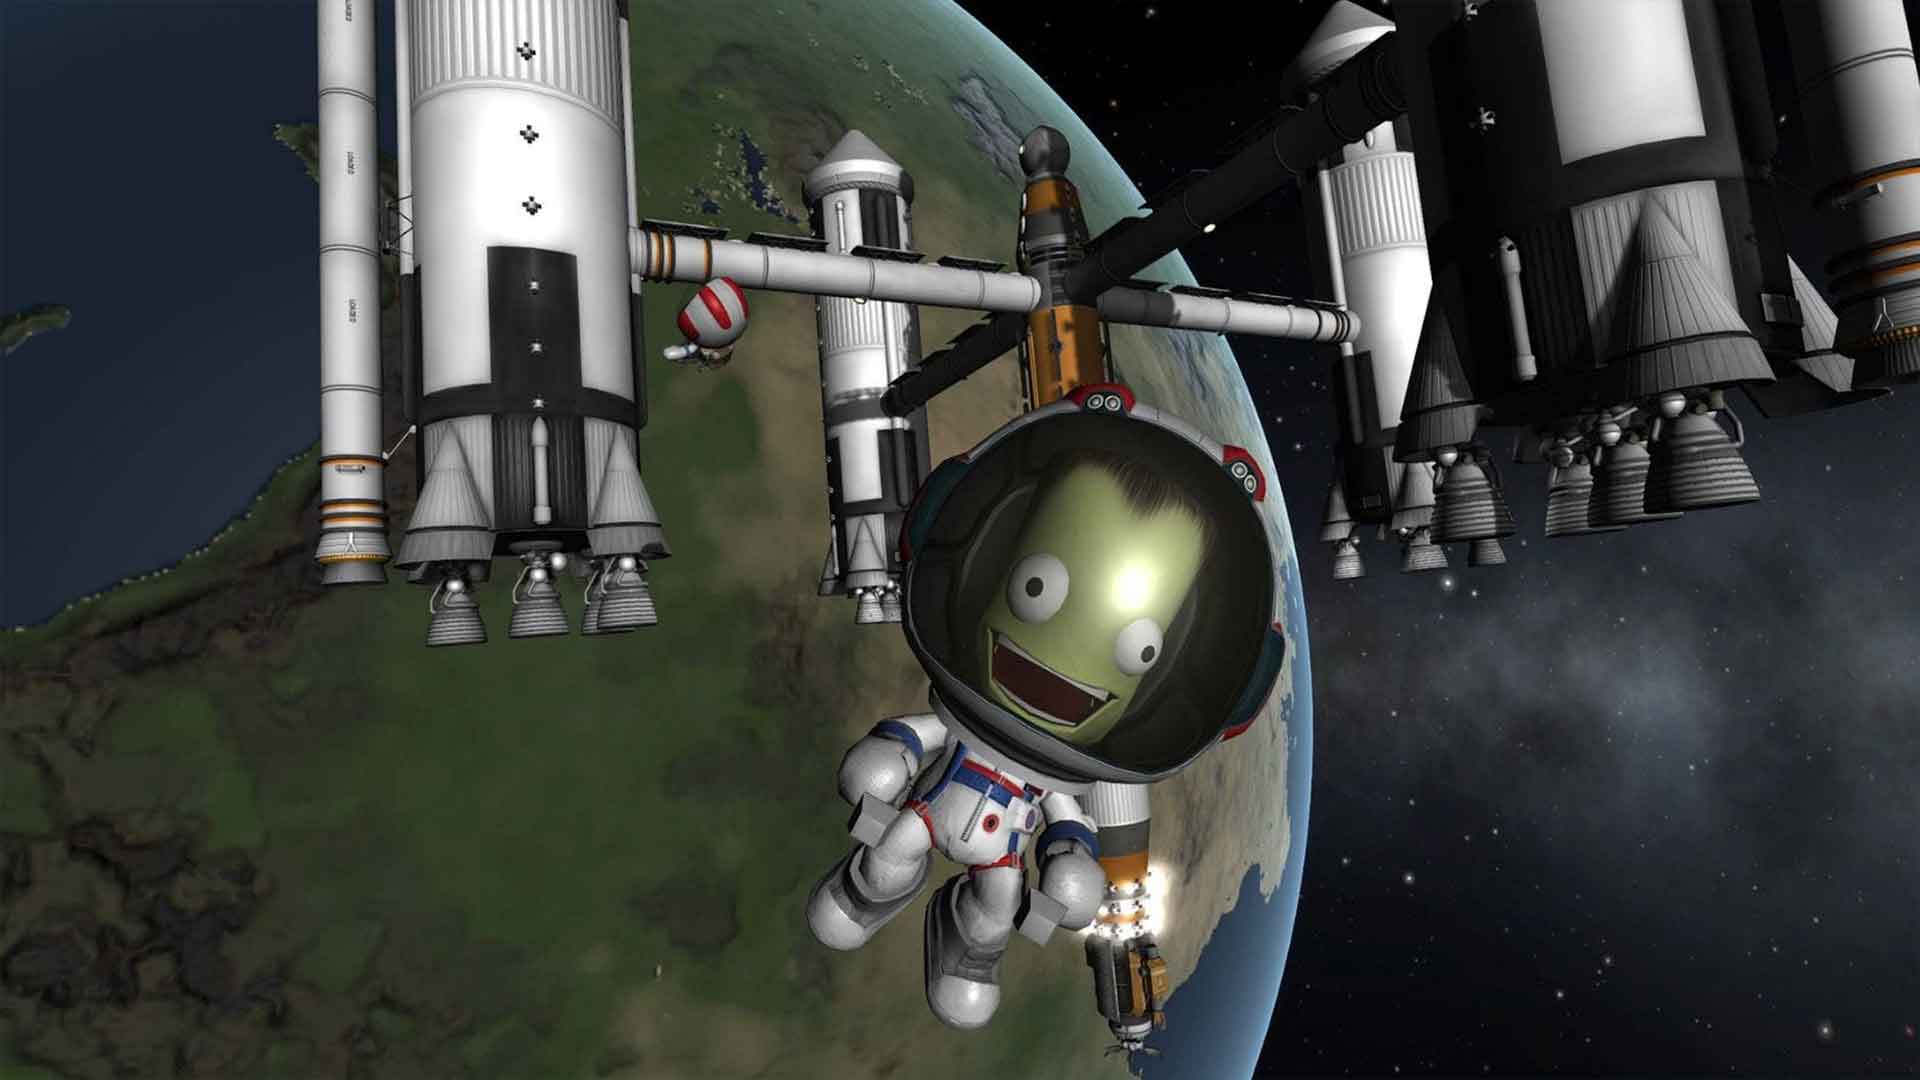 Kerbal Space Program 2, GamerSRD